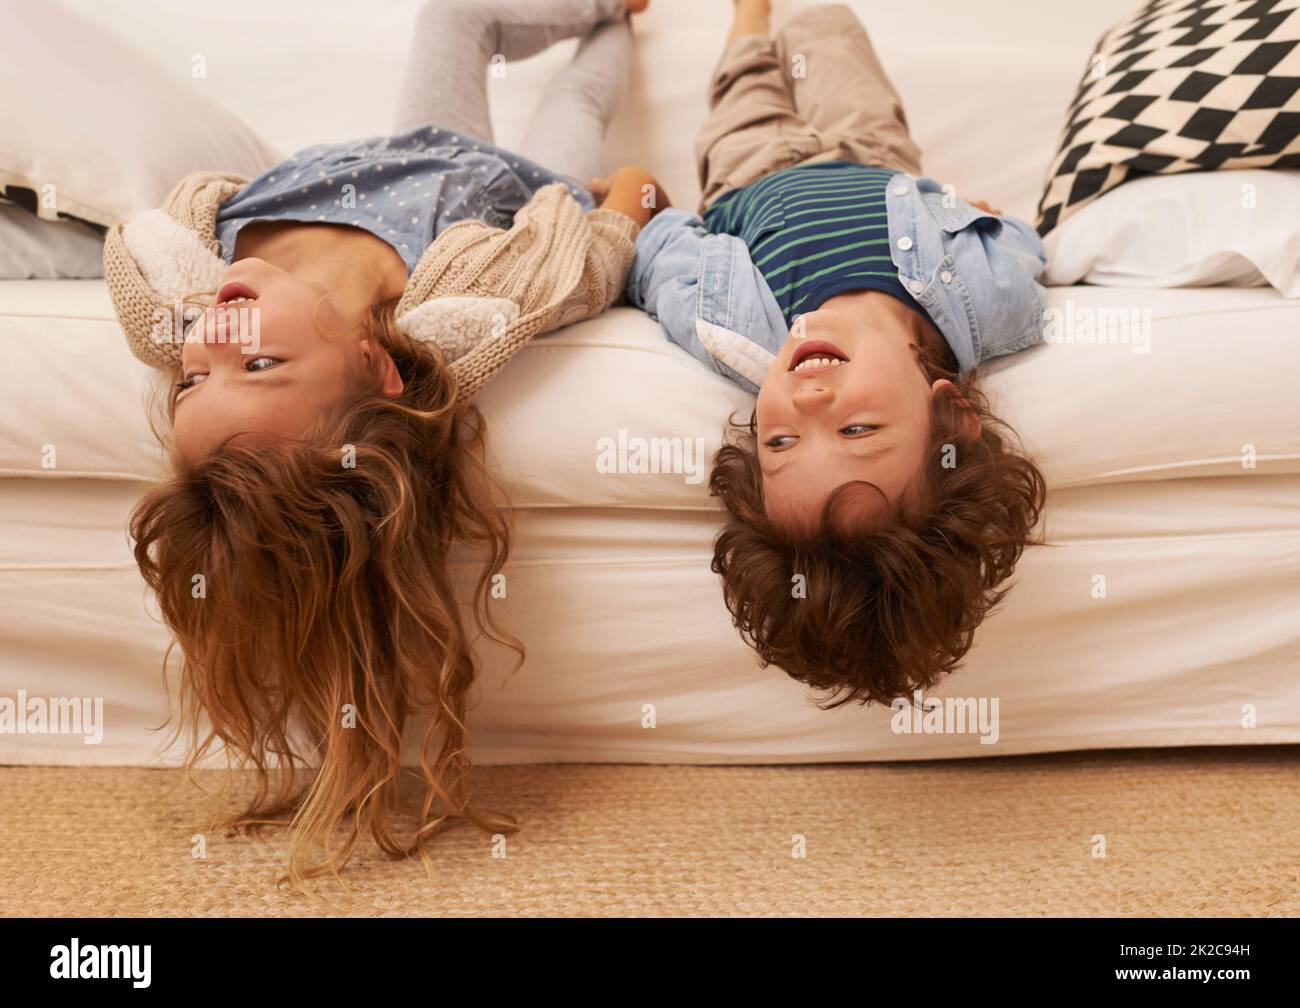 Herumhängen, ohne etwas zu tun. Aufnahme von zwei kleinen Kindern, die auf einem Sofa liegen und ihre Köpfe über dem Rand hängen. Stockfoto